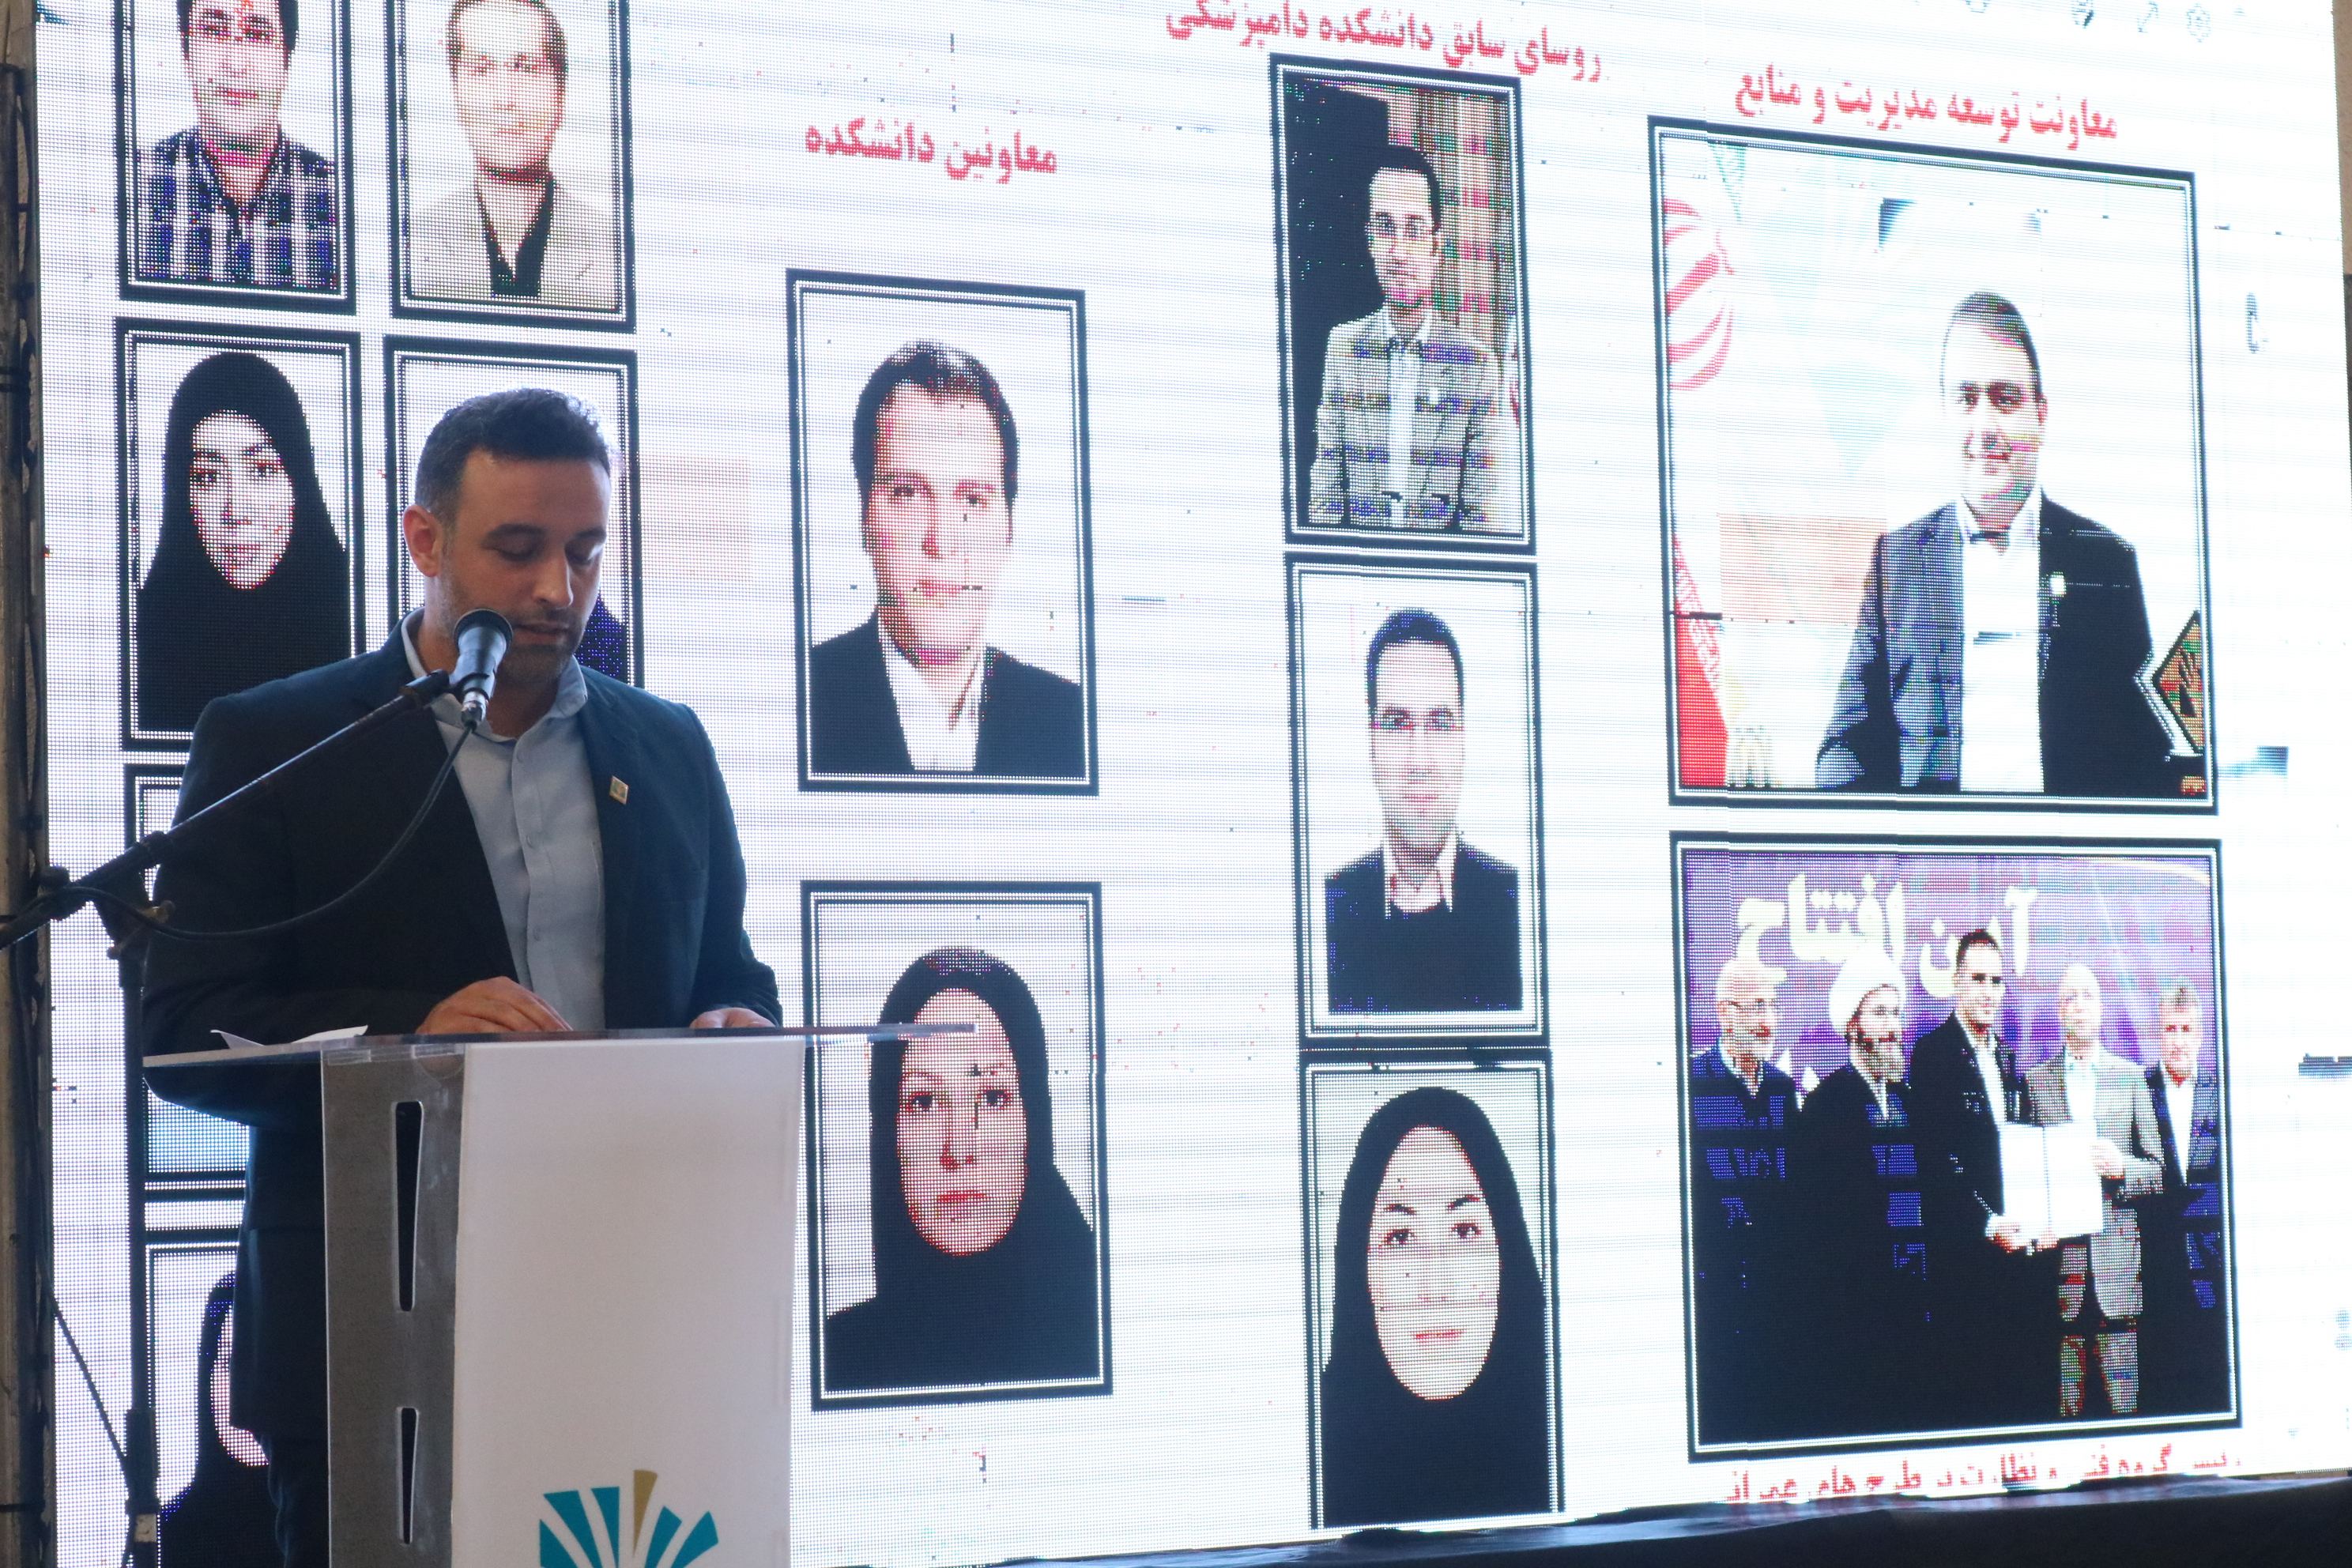 سخنرانی دکتر امیر خاکی رییس دانشکده دامپزشکی دانشگاه تخصصی فناوری های نوین آمل به مناسب روز ملی دامپزشکی